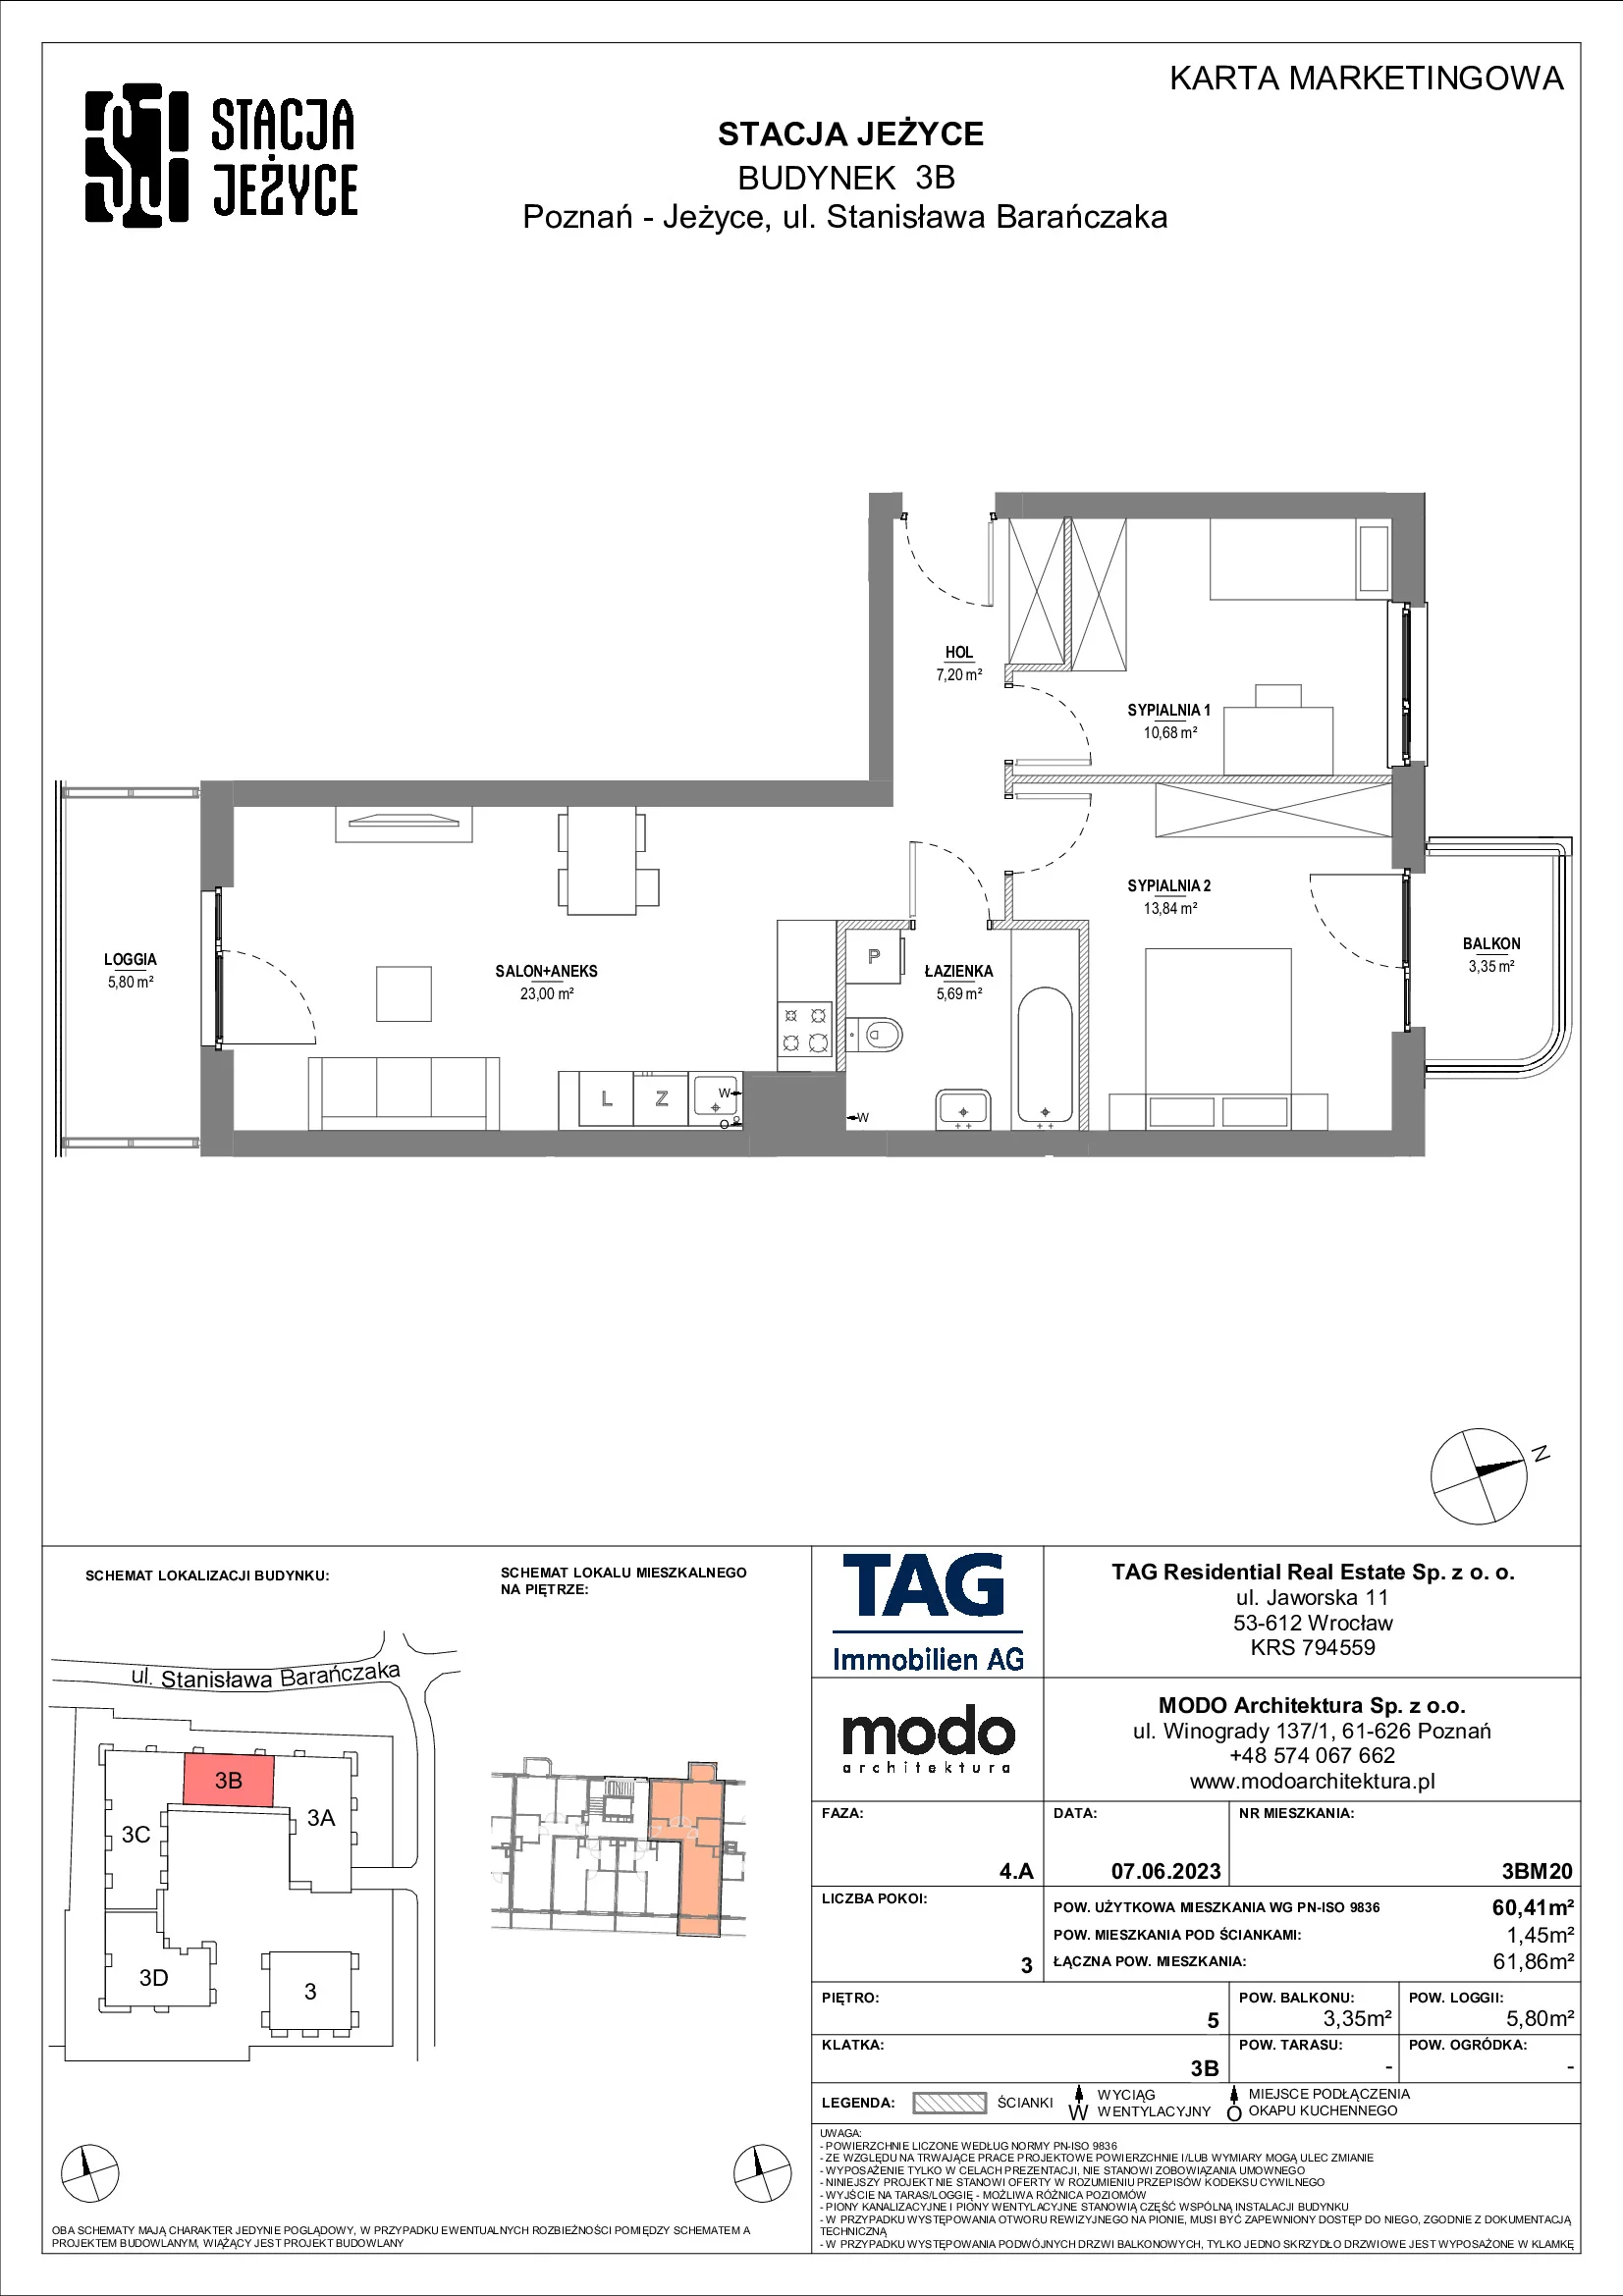 Mieszkanie 60,41 m², piętro 5, oferta nr 3BM20, Stacja Jeżyce, Poznań, Jeżyce, Jeżyce, ul. Stanisława Barańczaka 3